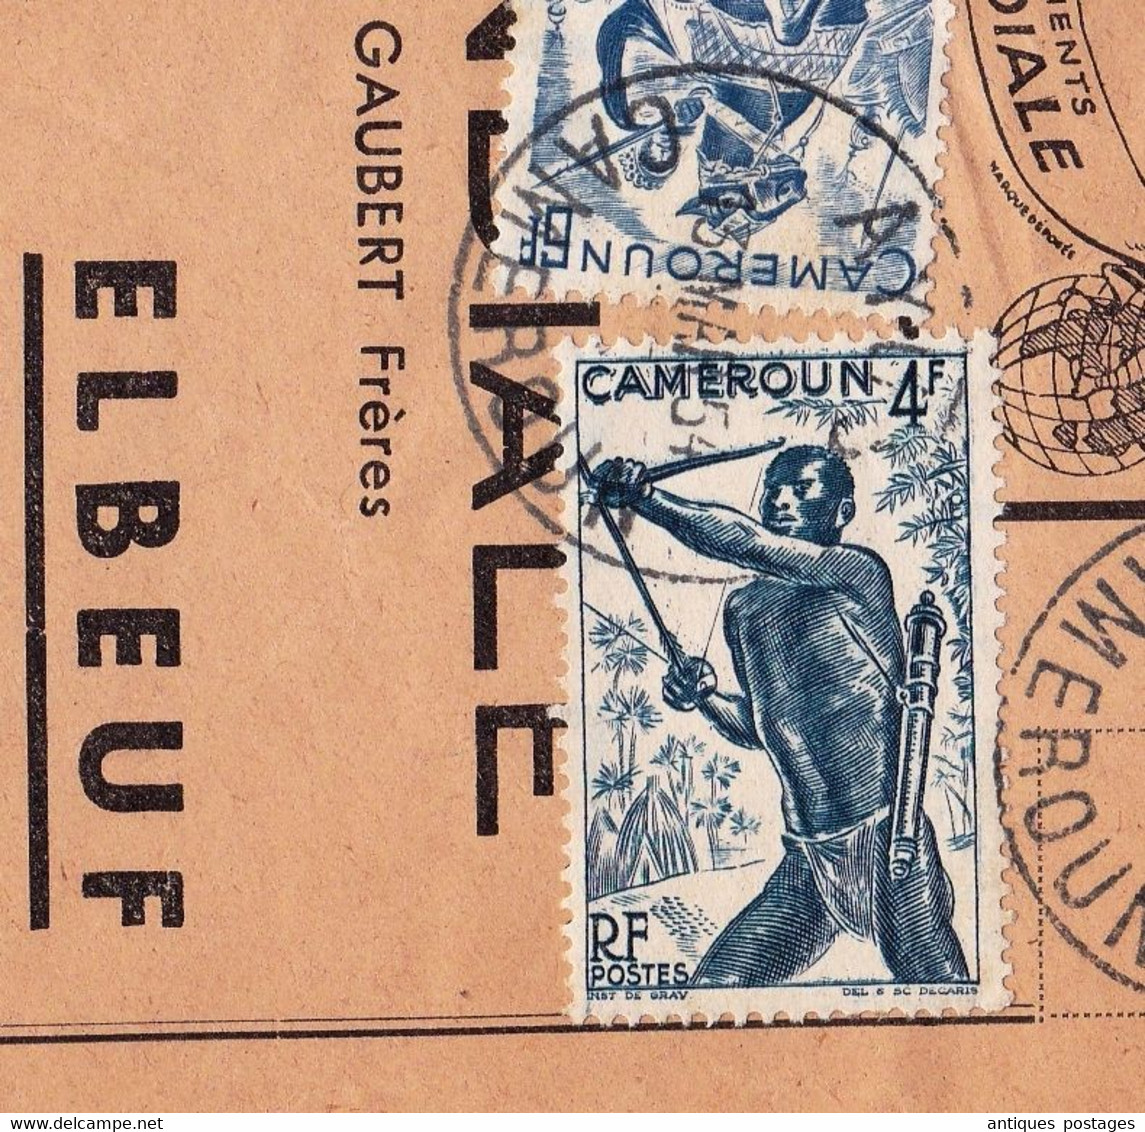 Lettre Ayos 1954 Cameroun Chemises & Vêtements La Mondiale Elboeuf Seine Maritime - Briefe U. Dokumente